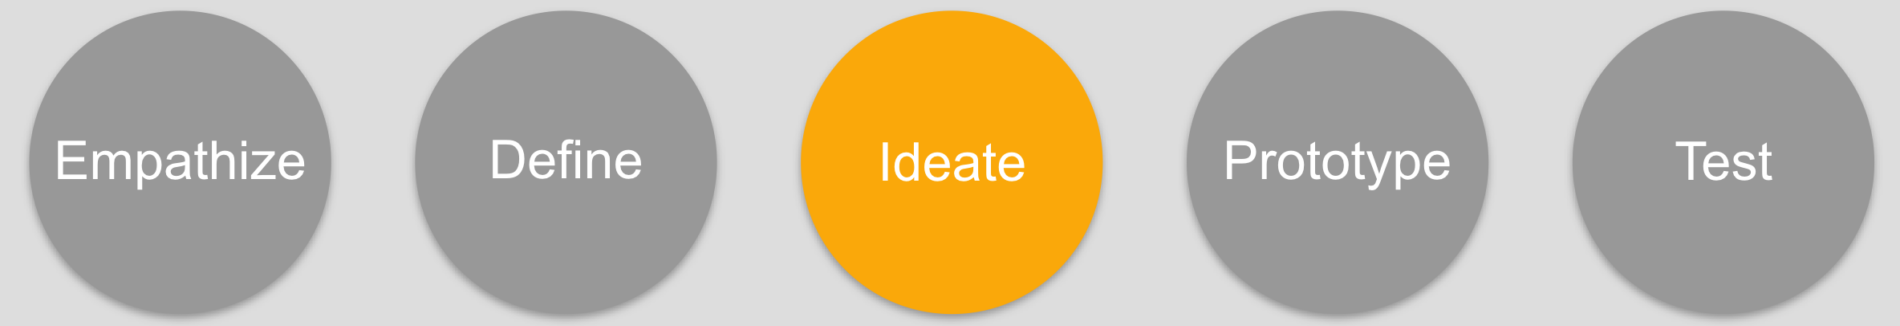 ideation phase design thinking